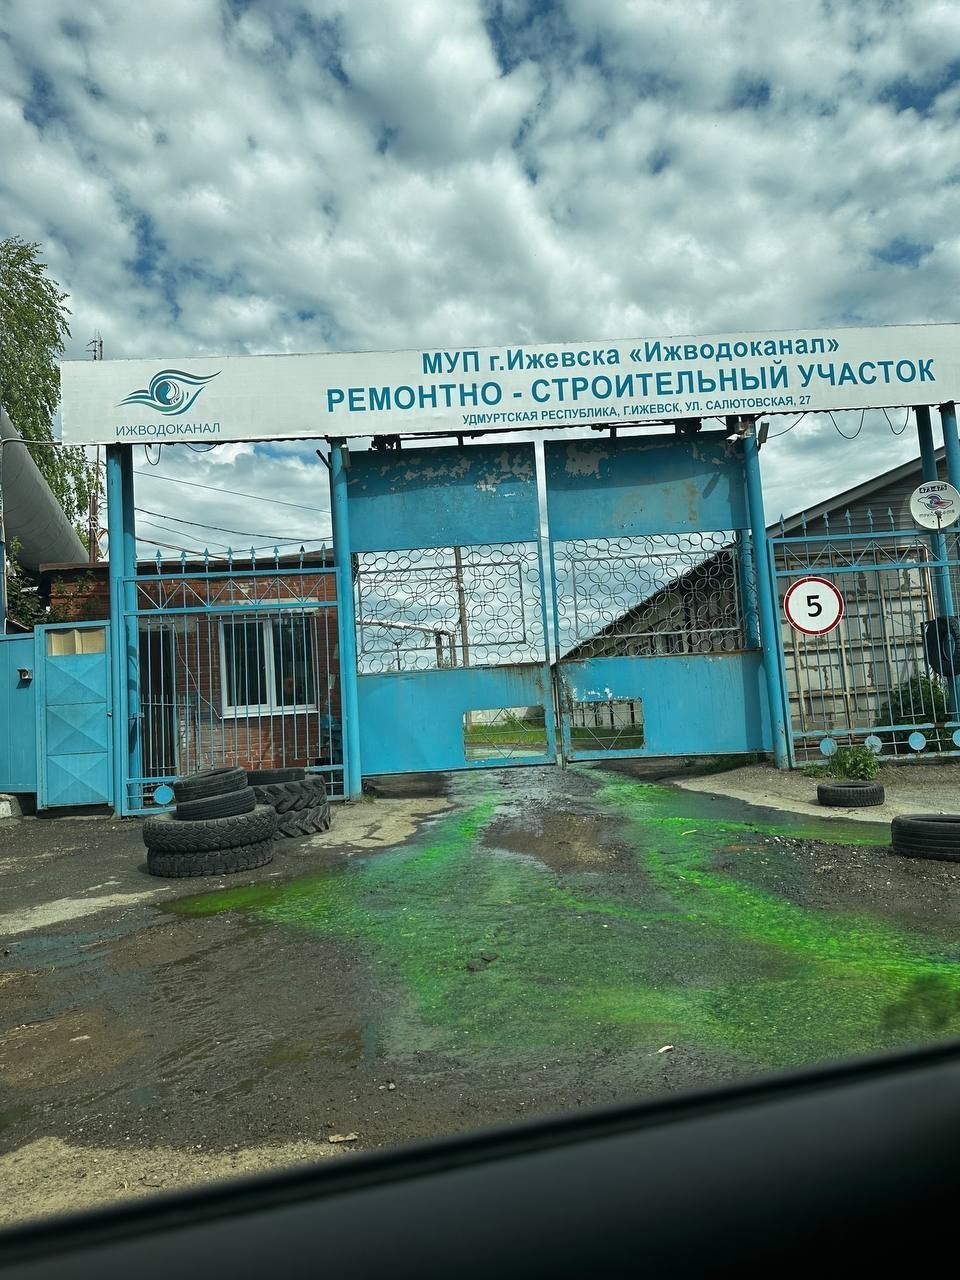 В Ижевске на улице Салютовской в результате прорыва трубопровода произошёл разлив зелёного красителя